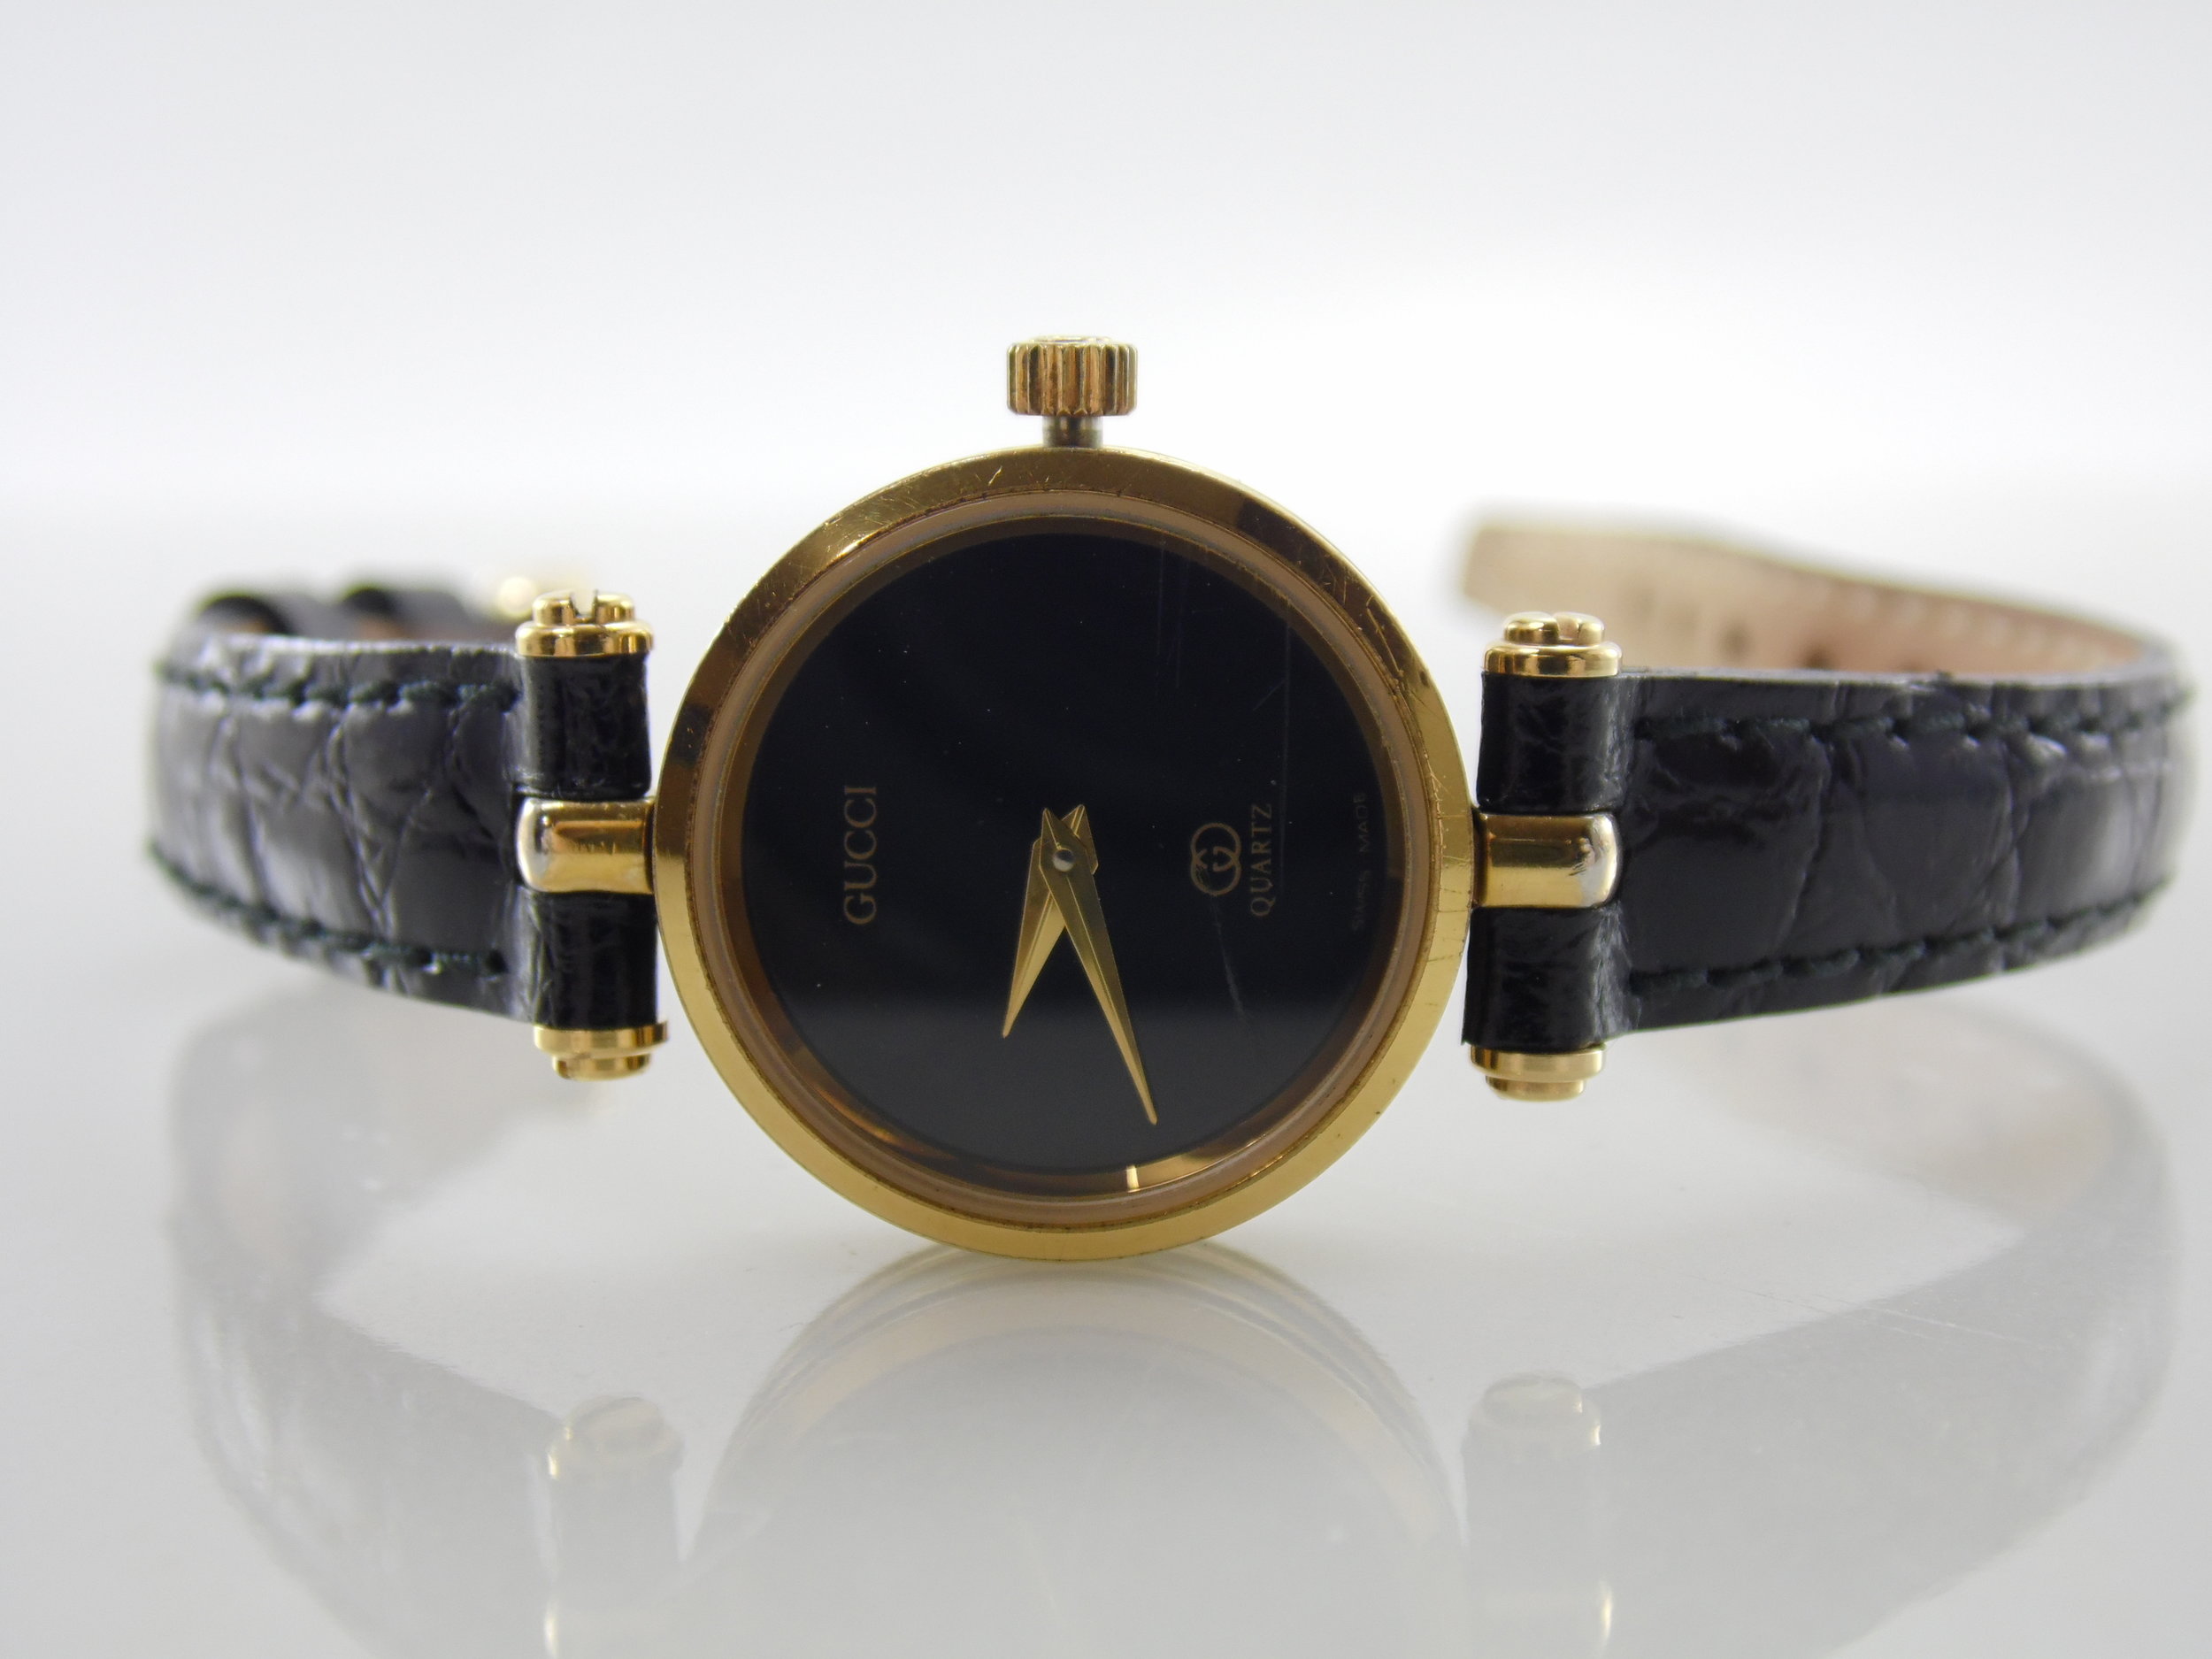 Gold Swiss Made Watch ETA 561.001 